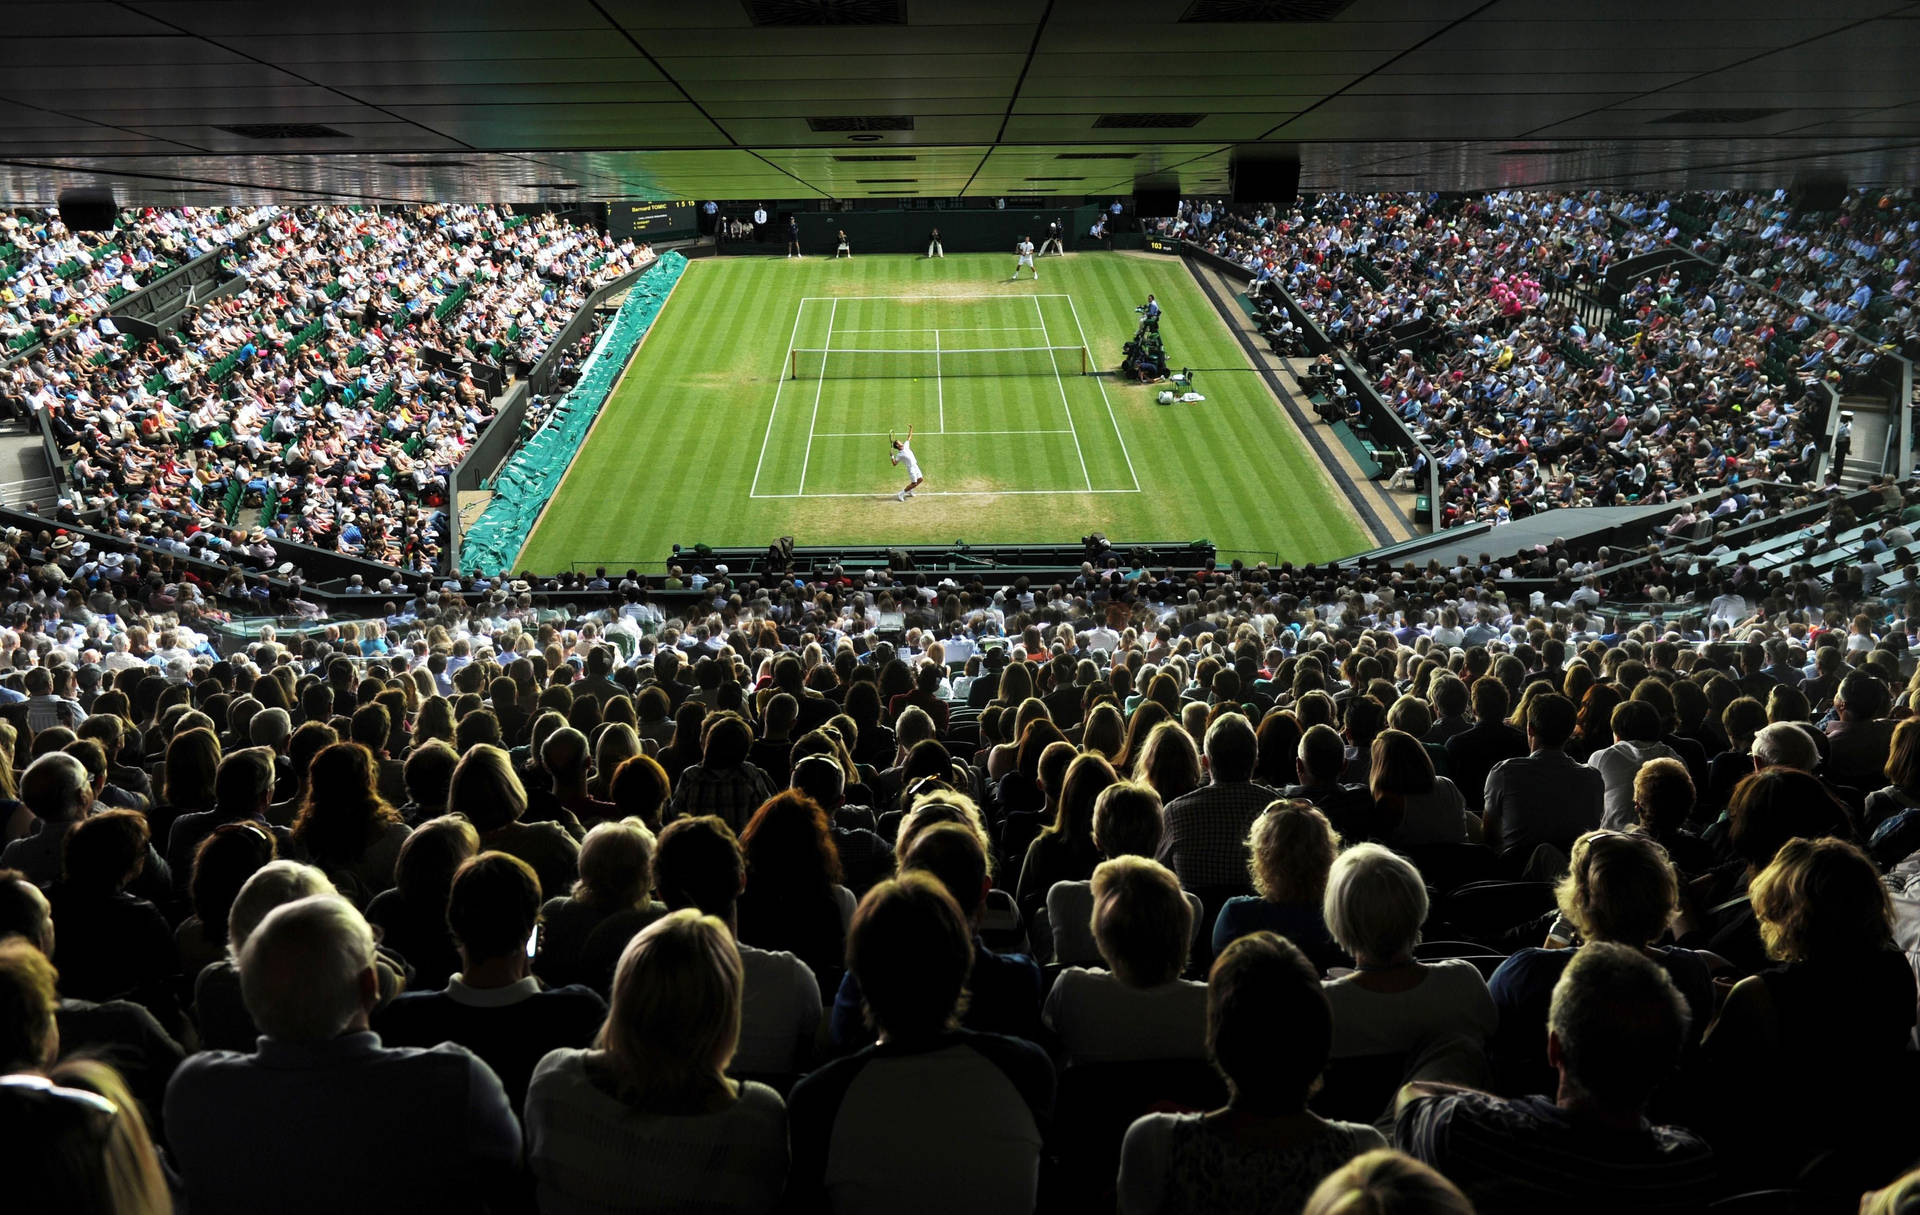 Pontode Vista Da Audiência De Wimbledon Em Papel De Parede Para Computador Ou Celular. Papel de Parede